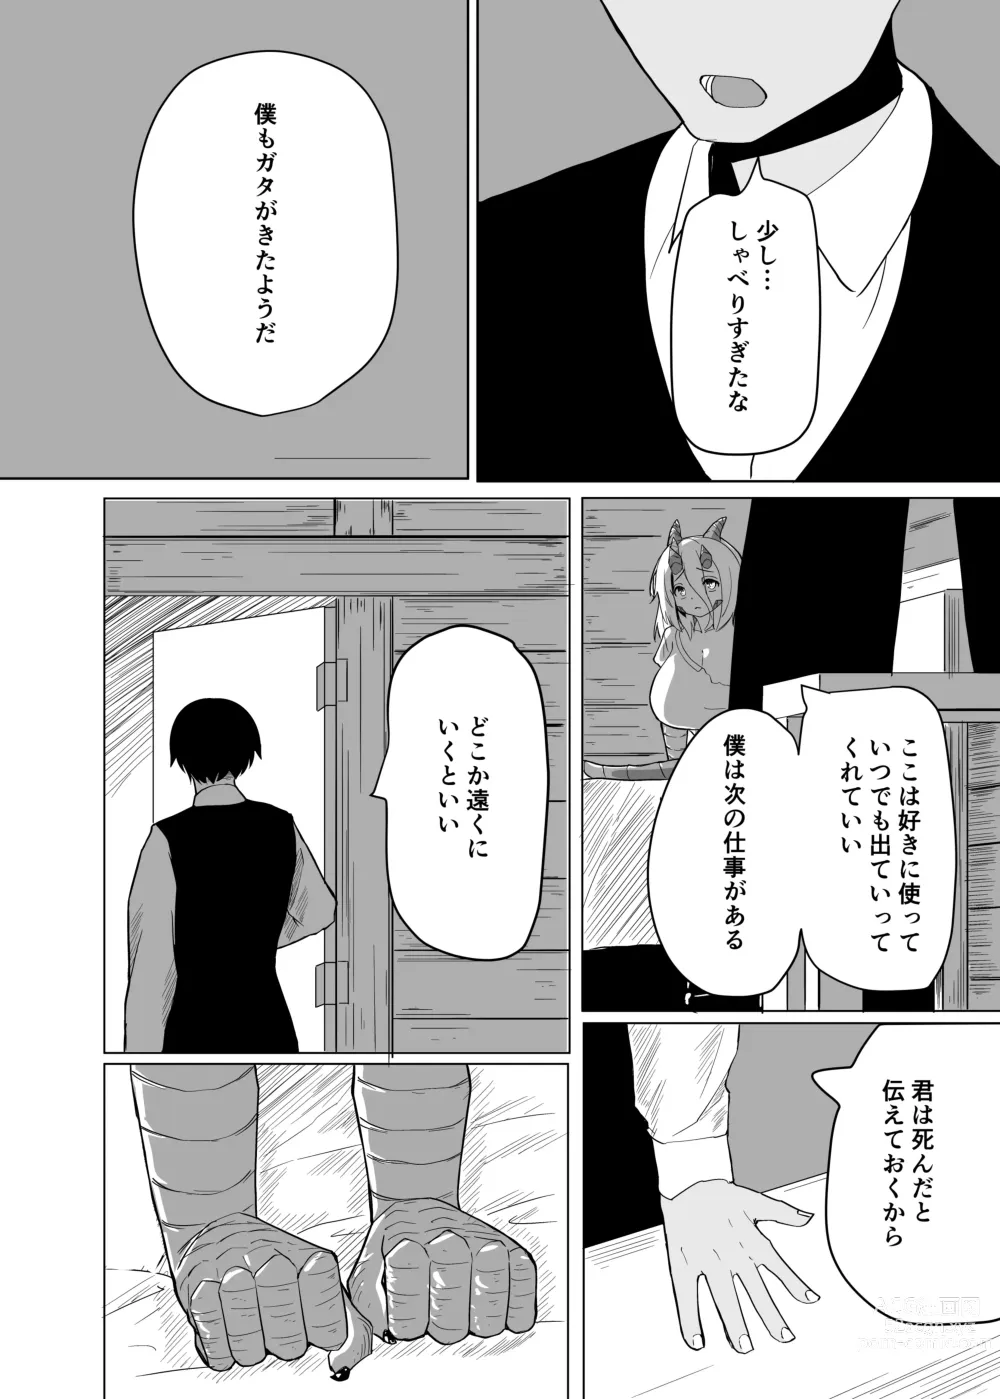 Page 15 of doujinshi Konna Sugata no Watashi demo Suki ni Natte kureru...? Hakugai Ryuujo to Genkai Koroshi-ya no Junai Kairaku Ochi